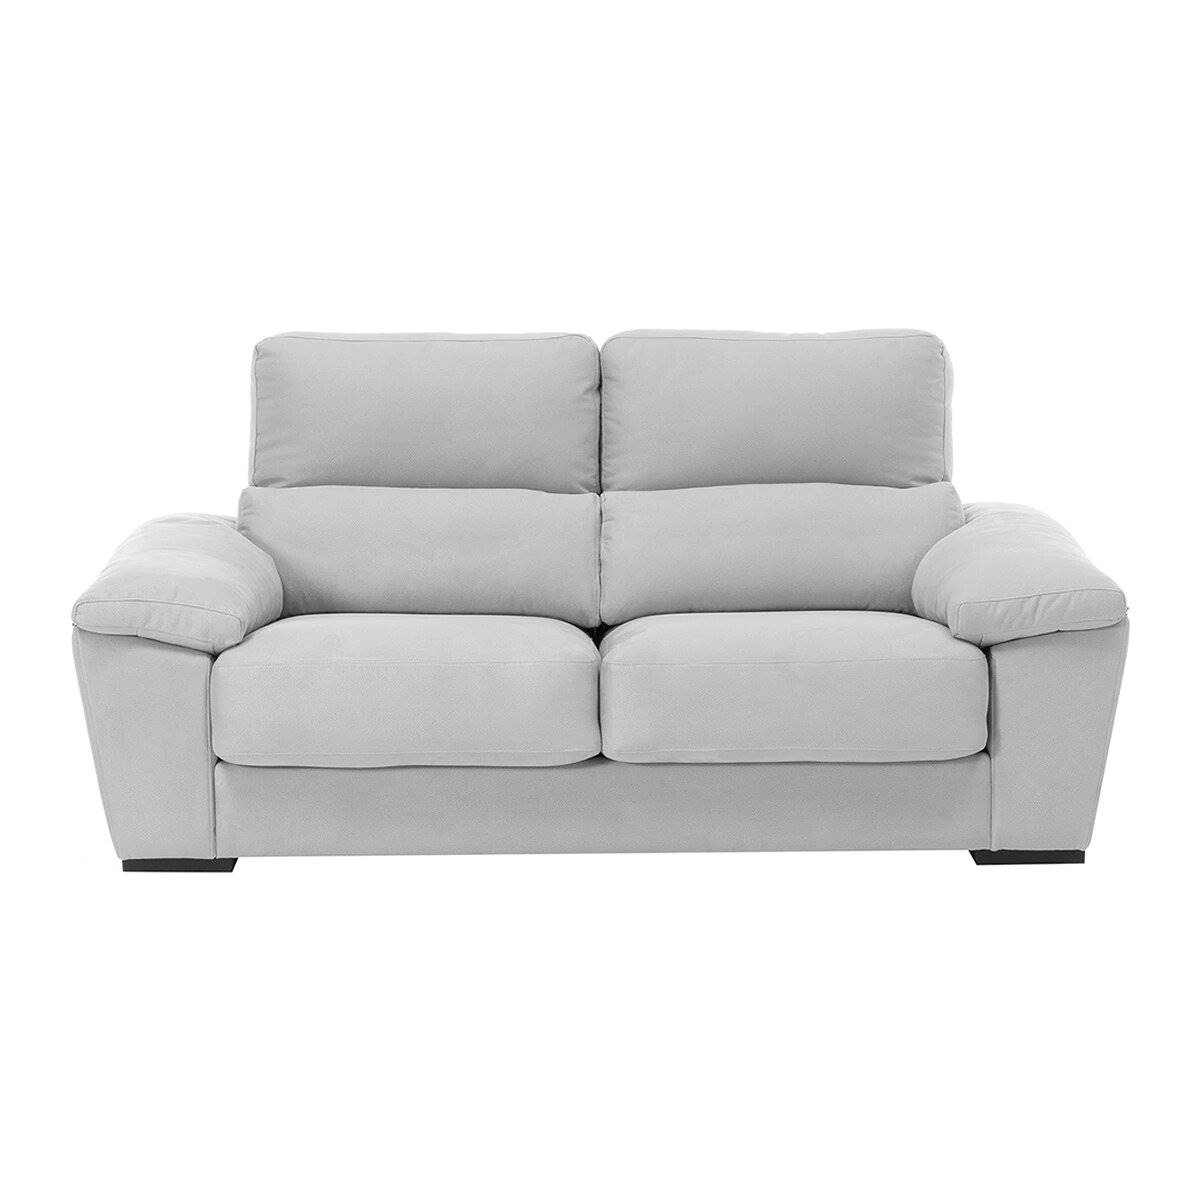 sofa pradera 3 plazas perla 00112800102092 eci